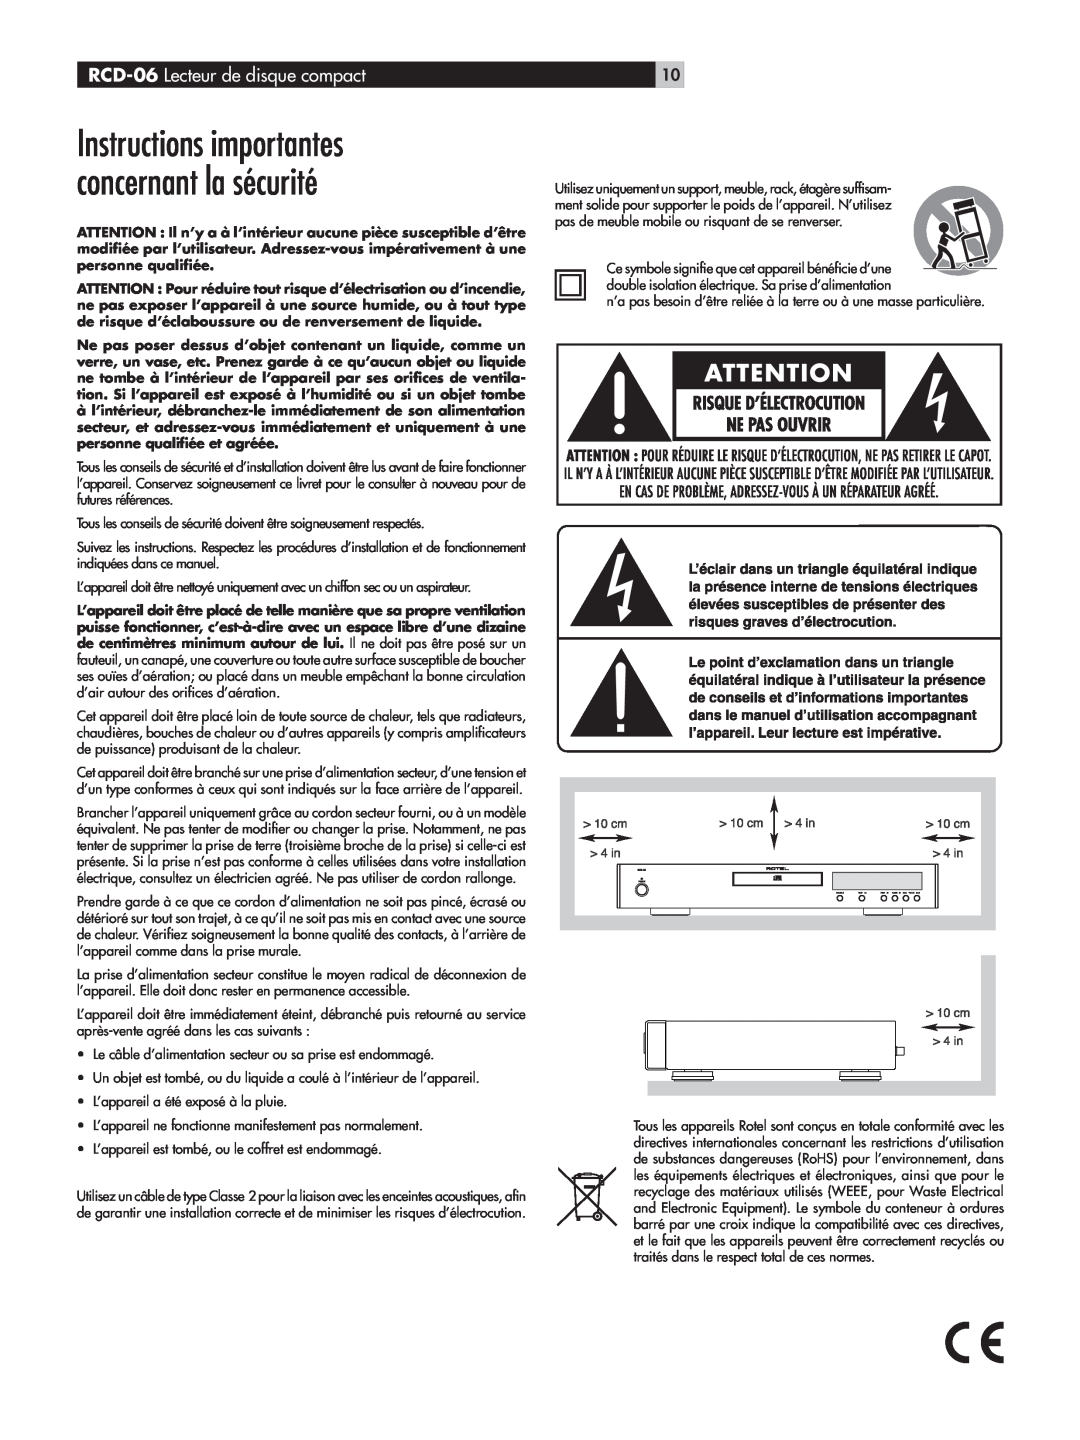 Rotel owner manual Instructions importantes concernant la sécurité, RCD-06 Lecteur de disque compact 